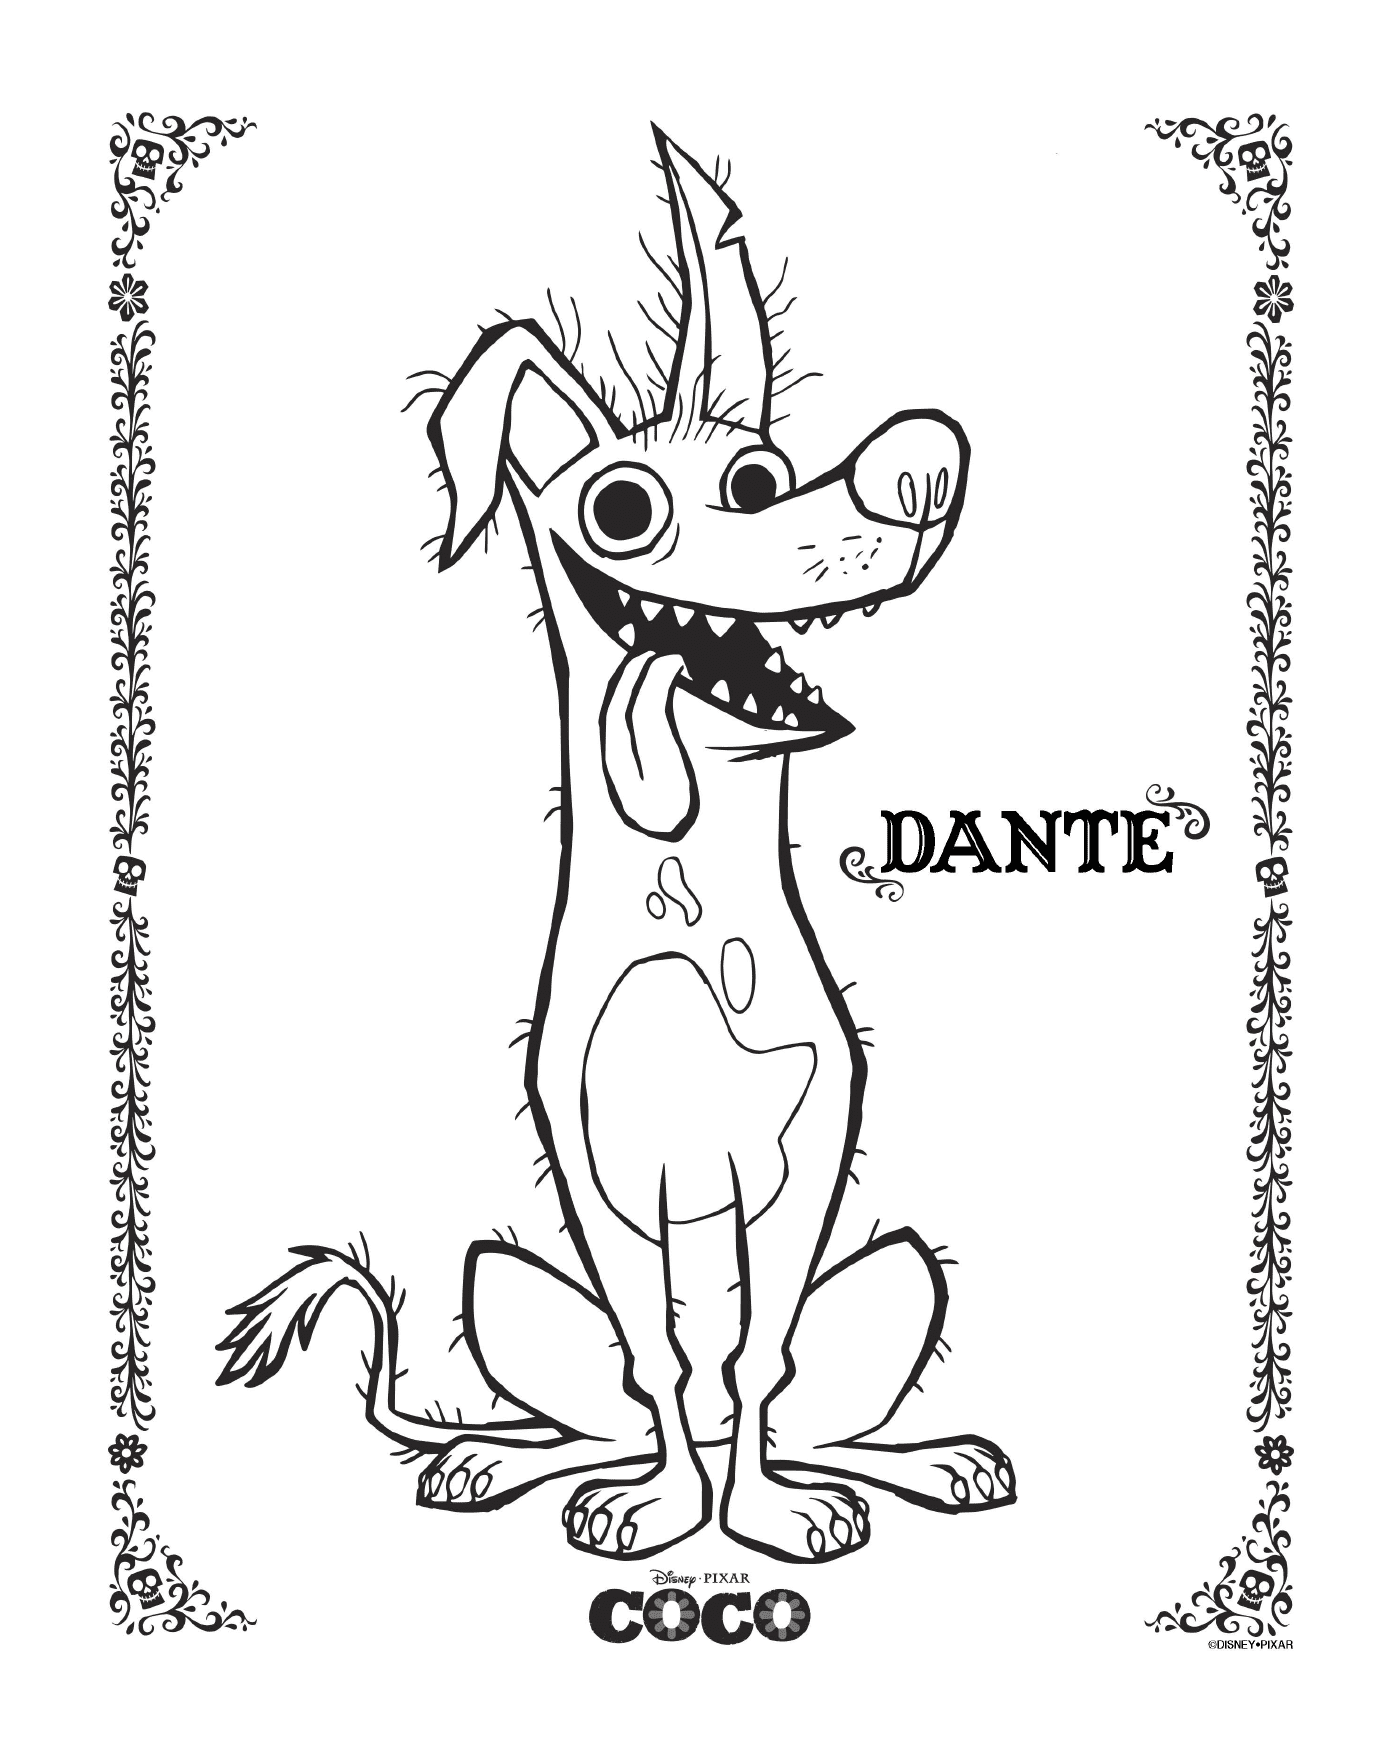   Dante dans Coco, de Disney 